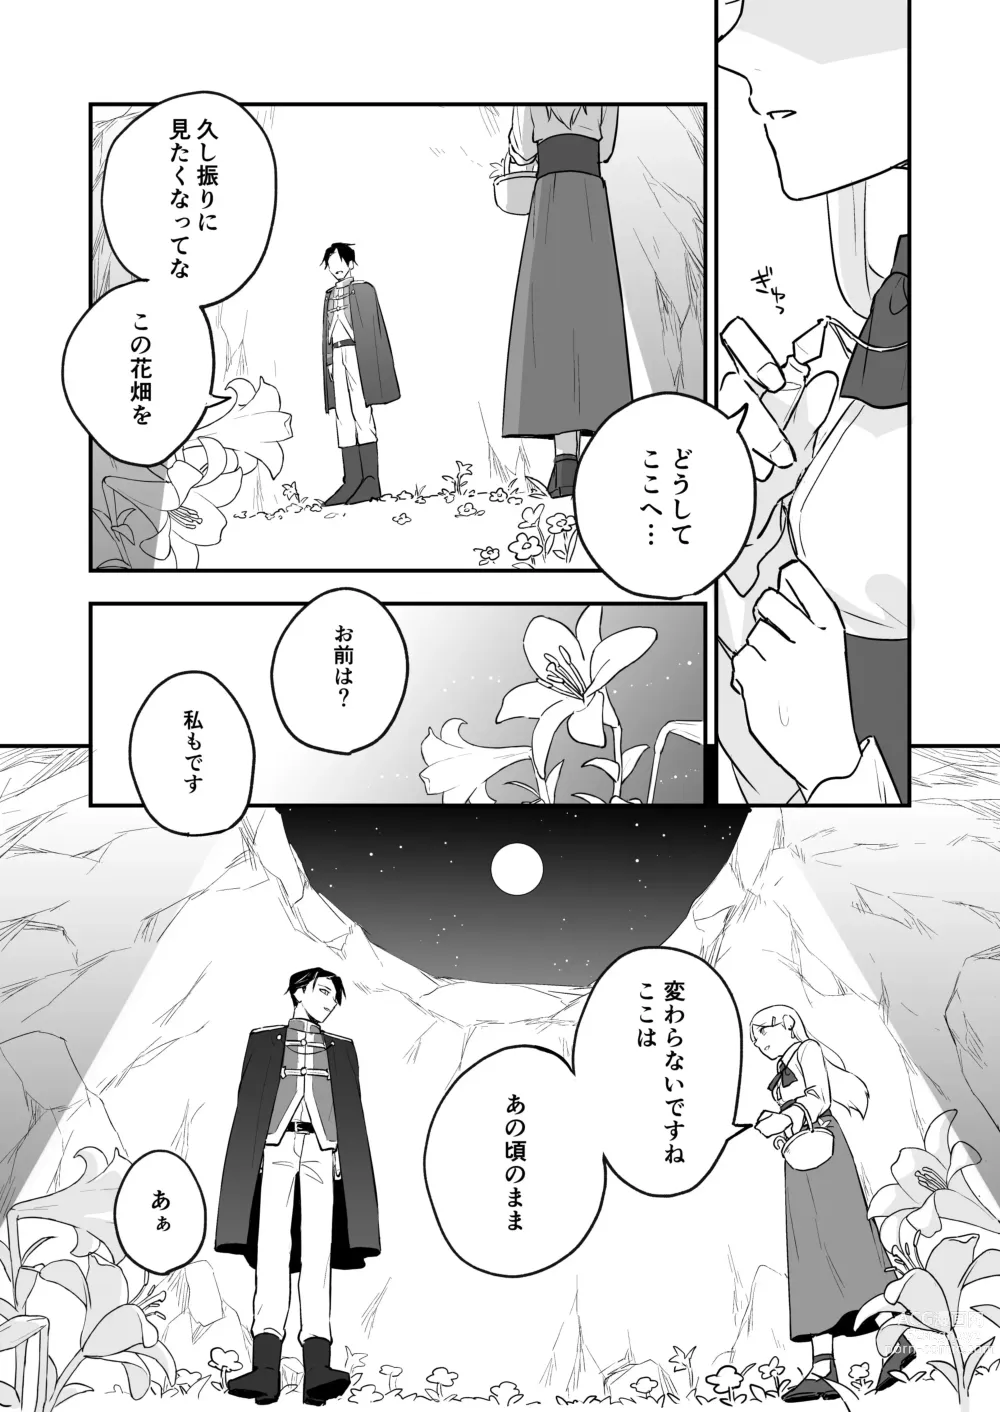 Page 7 of doujinshi Himitsu no Shirayuri